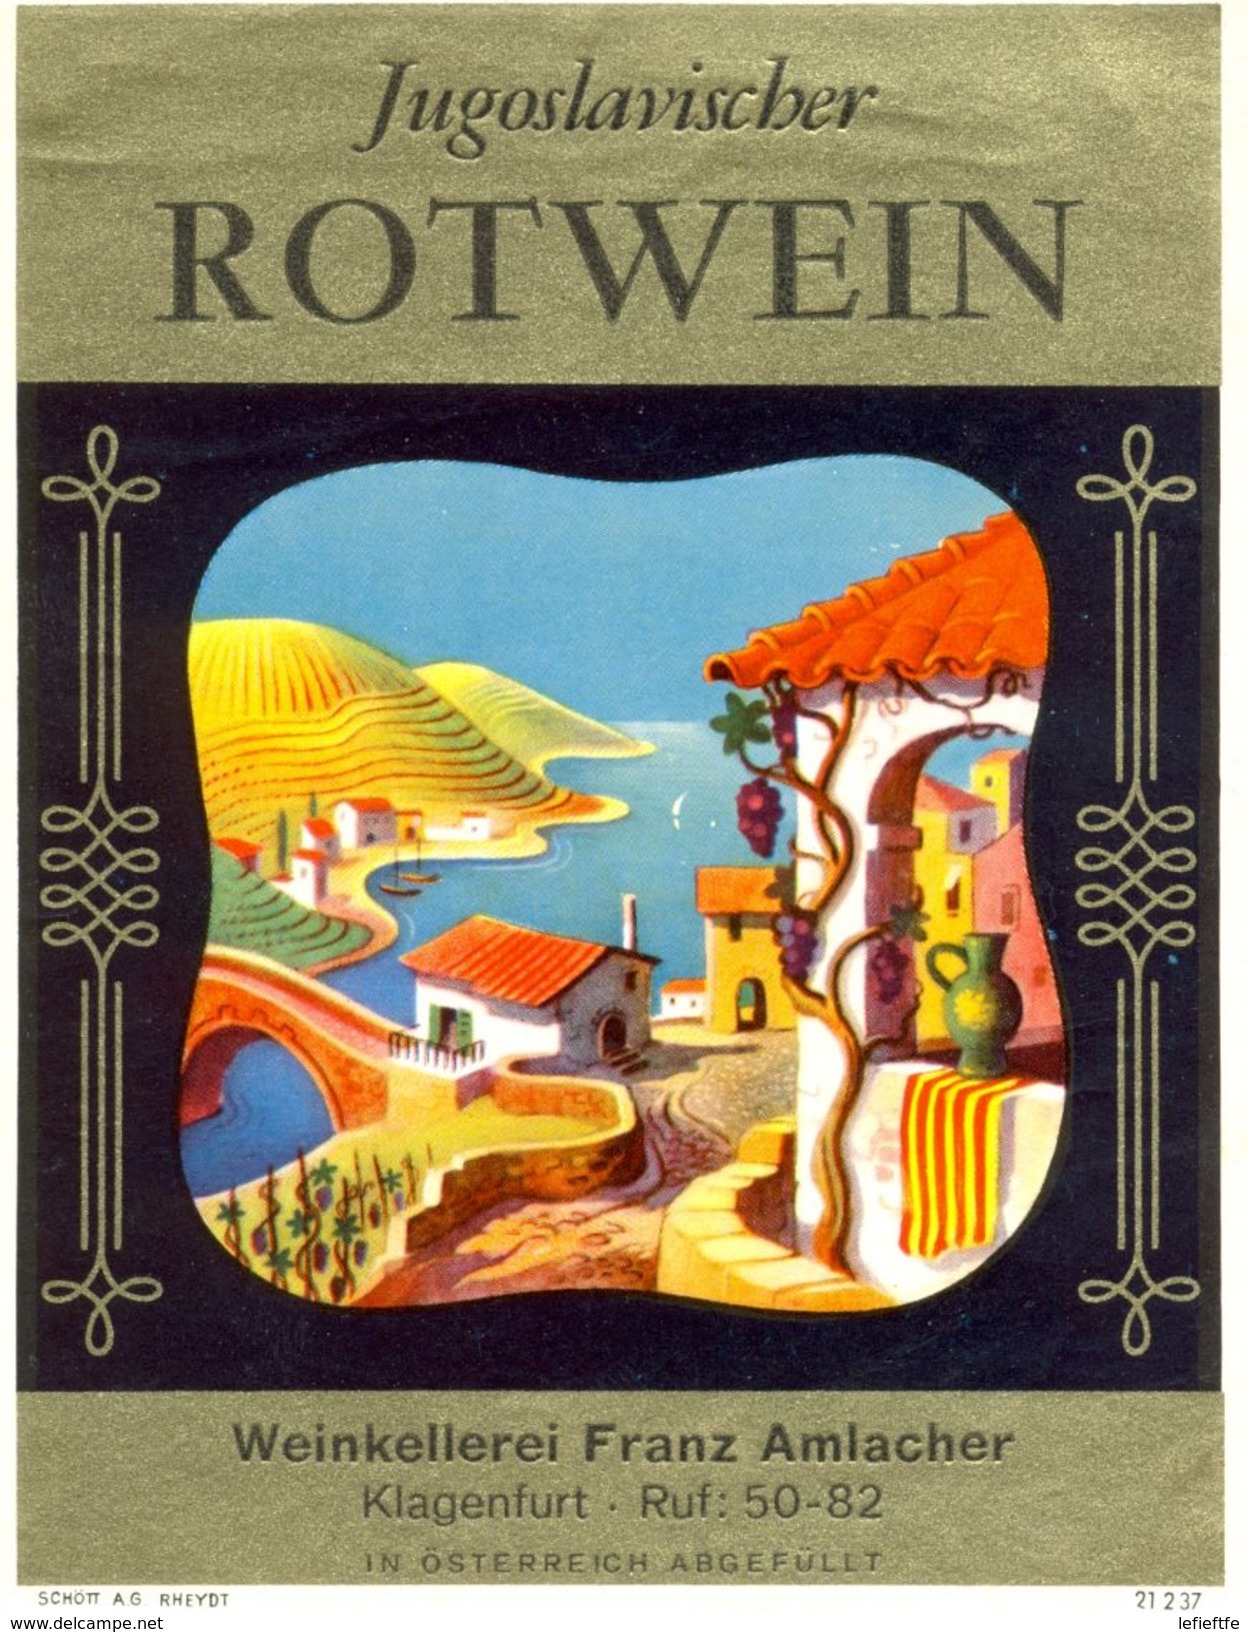 1490 - Yougoslavie - Jugoslavischer Rotwein - Weinkellerer Franz Amlacher - Klagenfurt - Rotwein